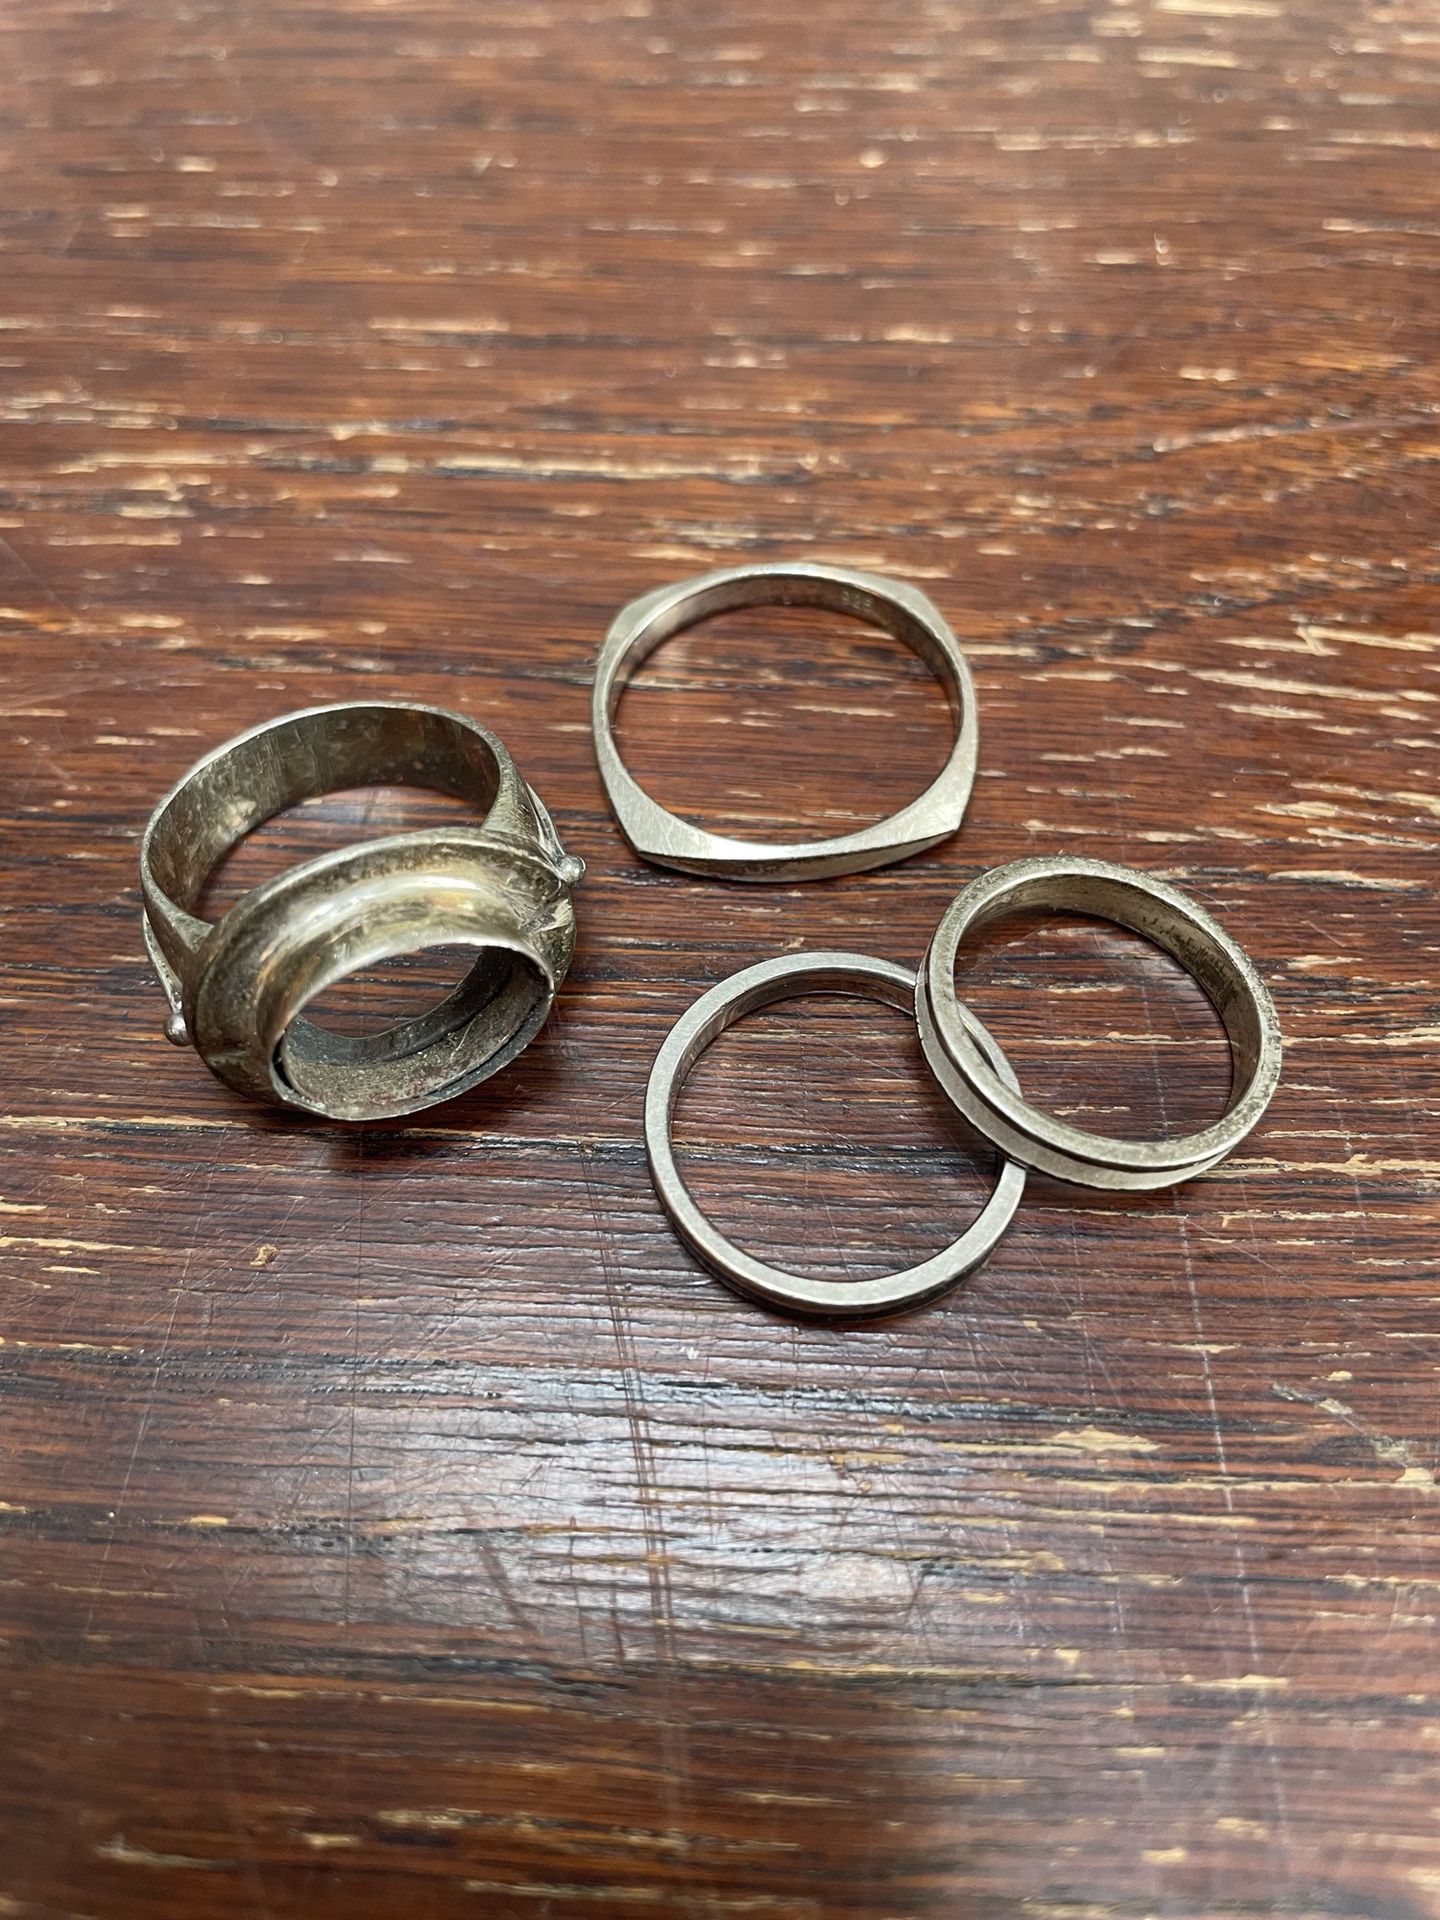 Null Lote en plata 800 y 925°/°° de 4 anillos, dos esmaltados
P.B. 16,96 g